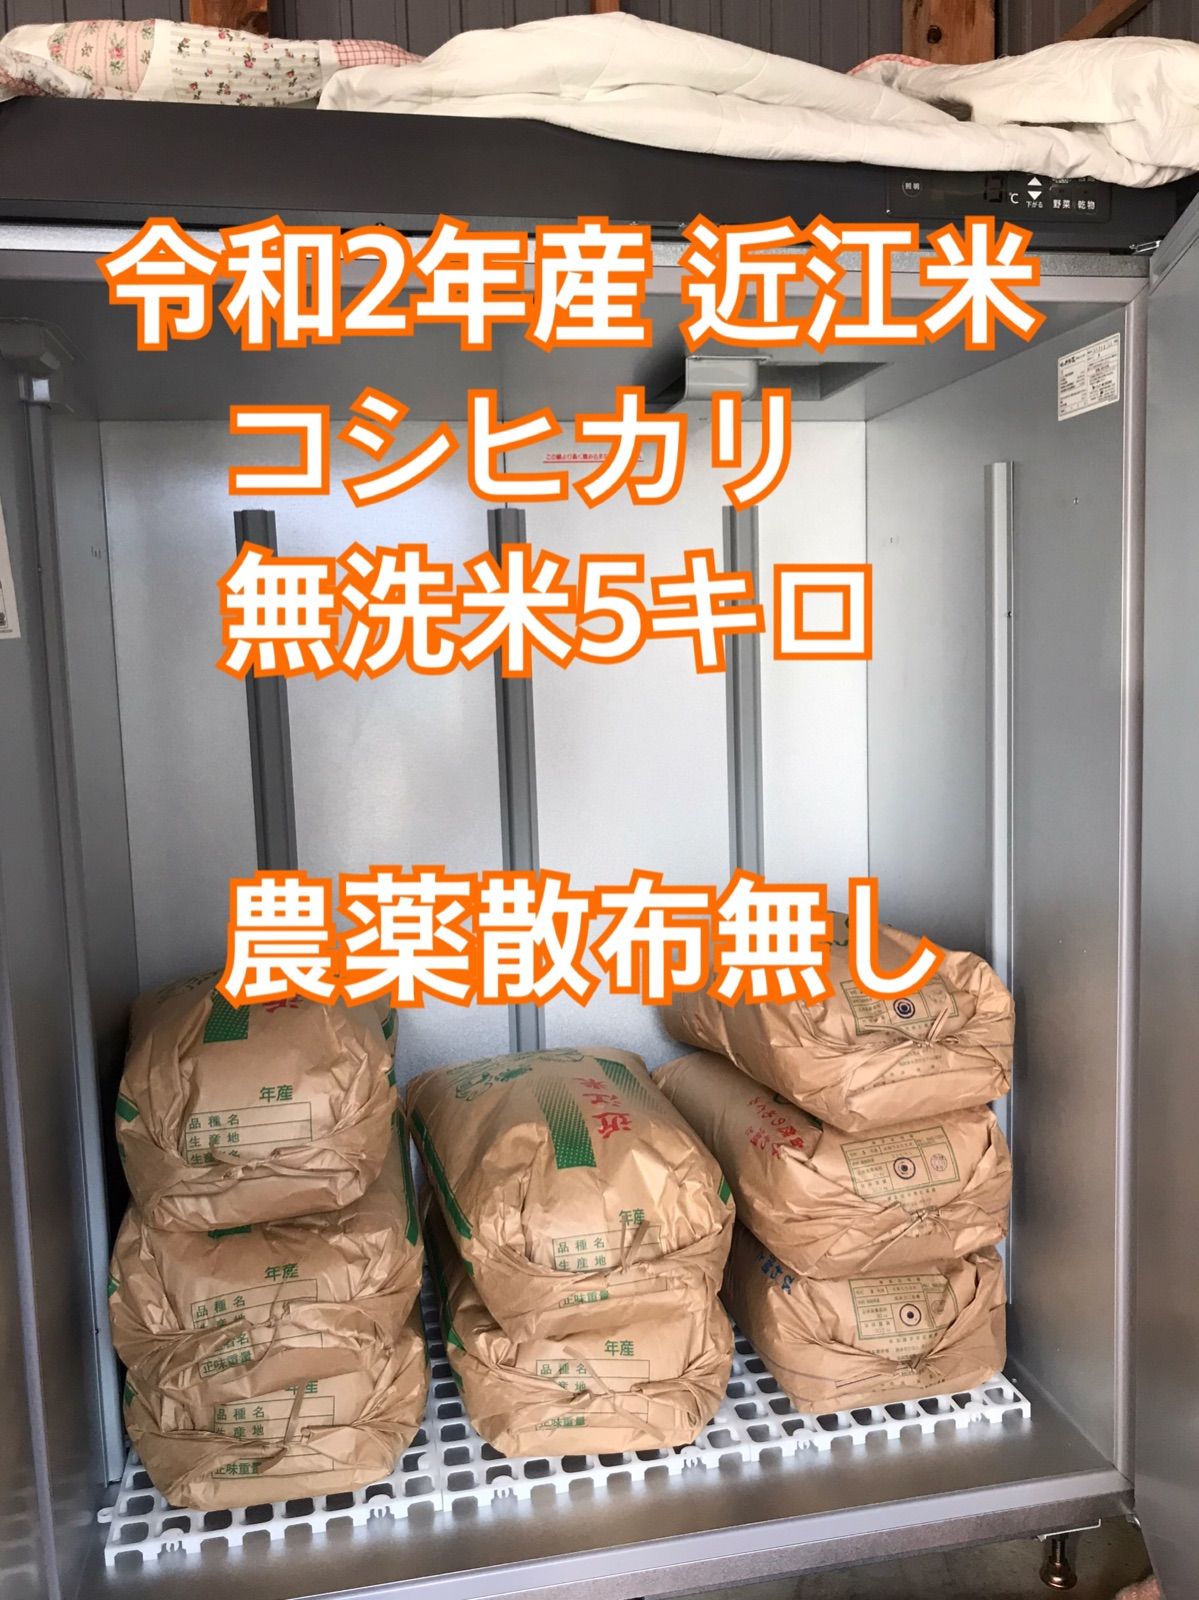 あと1袋 値下げ 古米 令和２年産近江米コシヒカ無洗米5キロ 殺菌殺虫剤散布無し メルカリShops